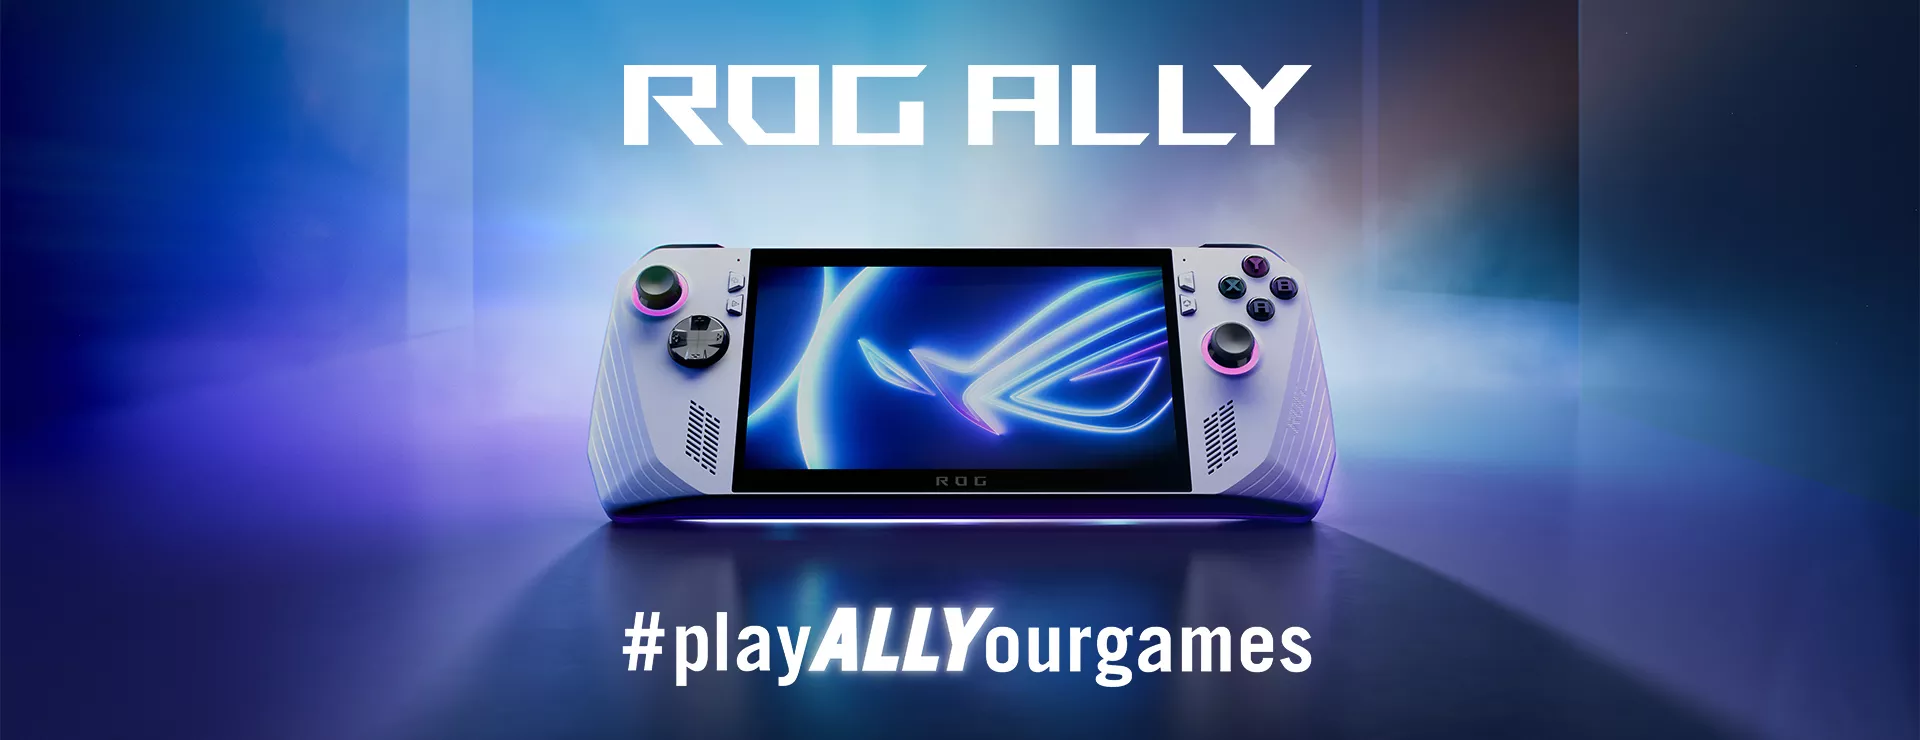 Консоль ROG Ally на голубом фоне. Под ней видна подпись “#Все игры всегда с тобой”